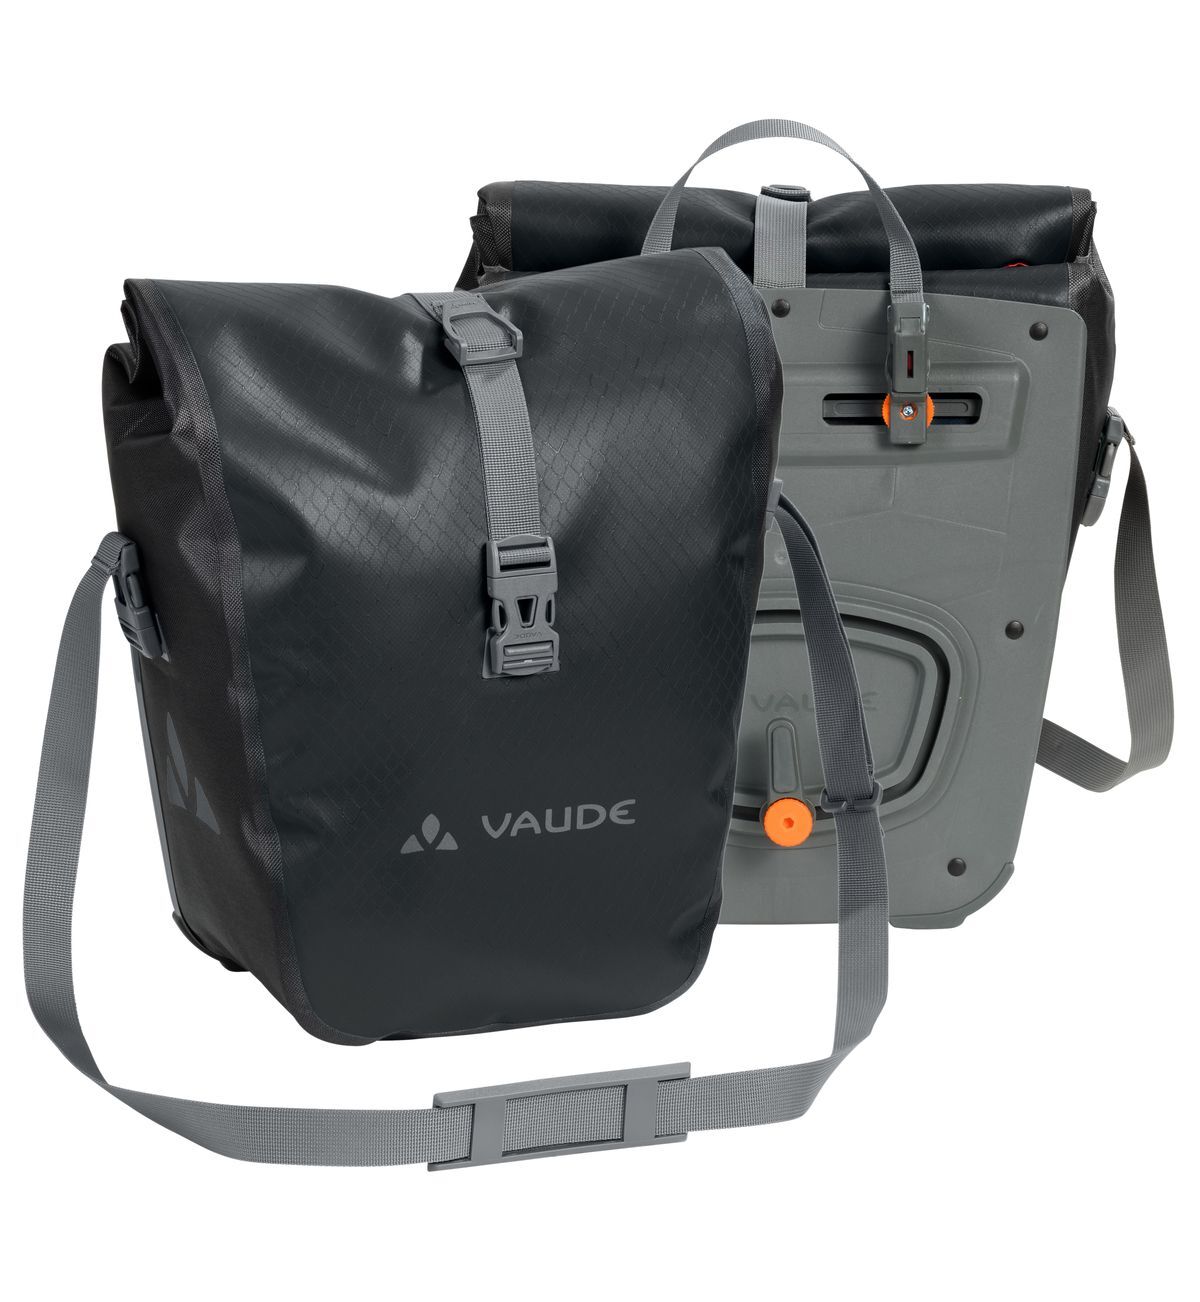 Vaude - Aqua Front - Bolsa para el portaequipaje